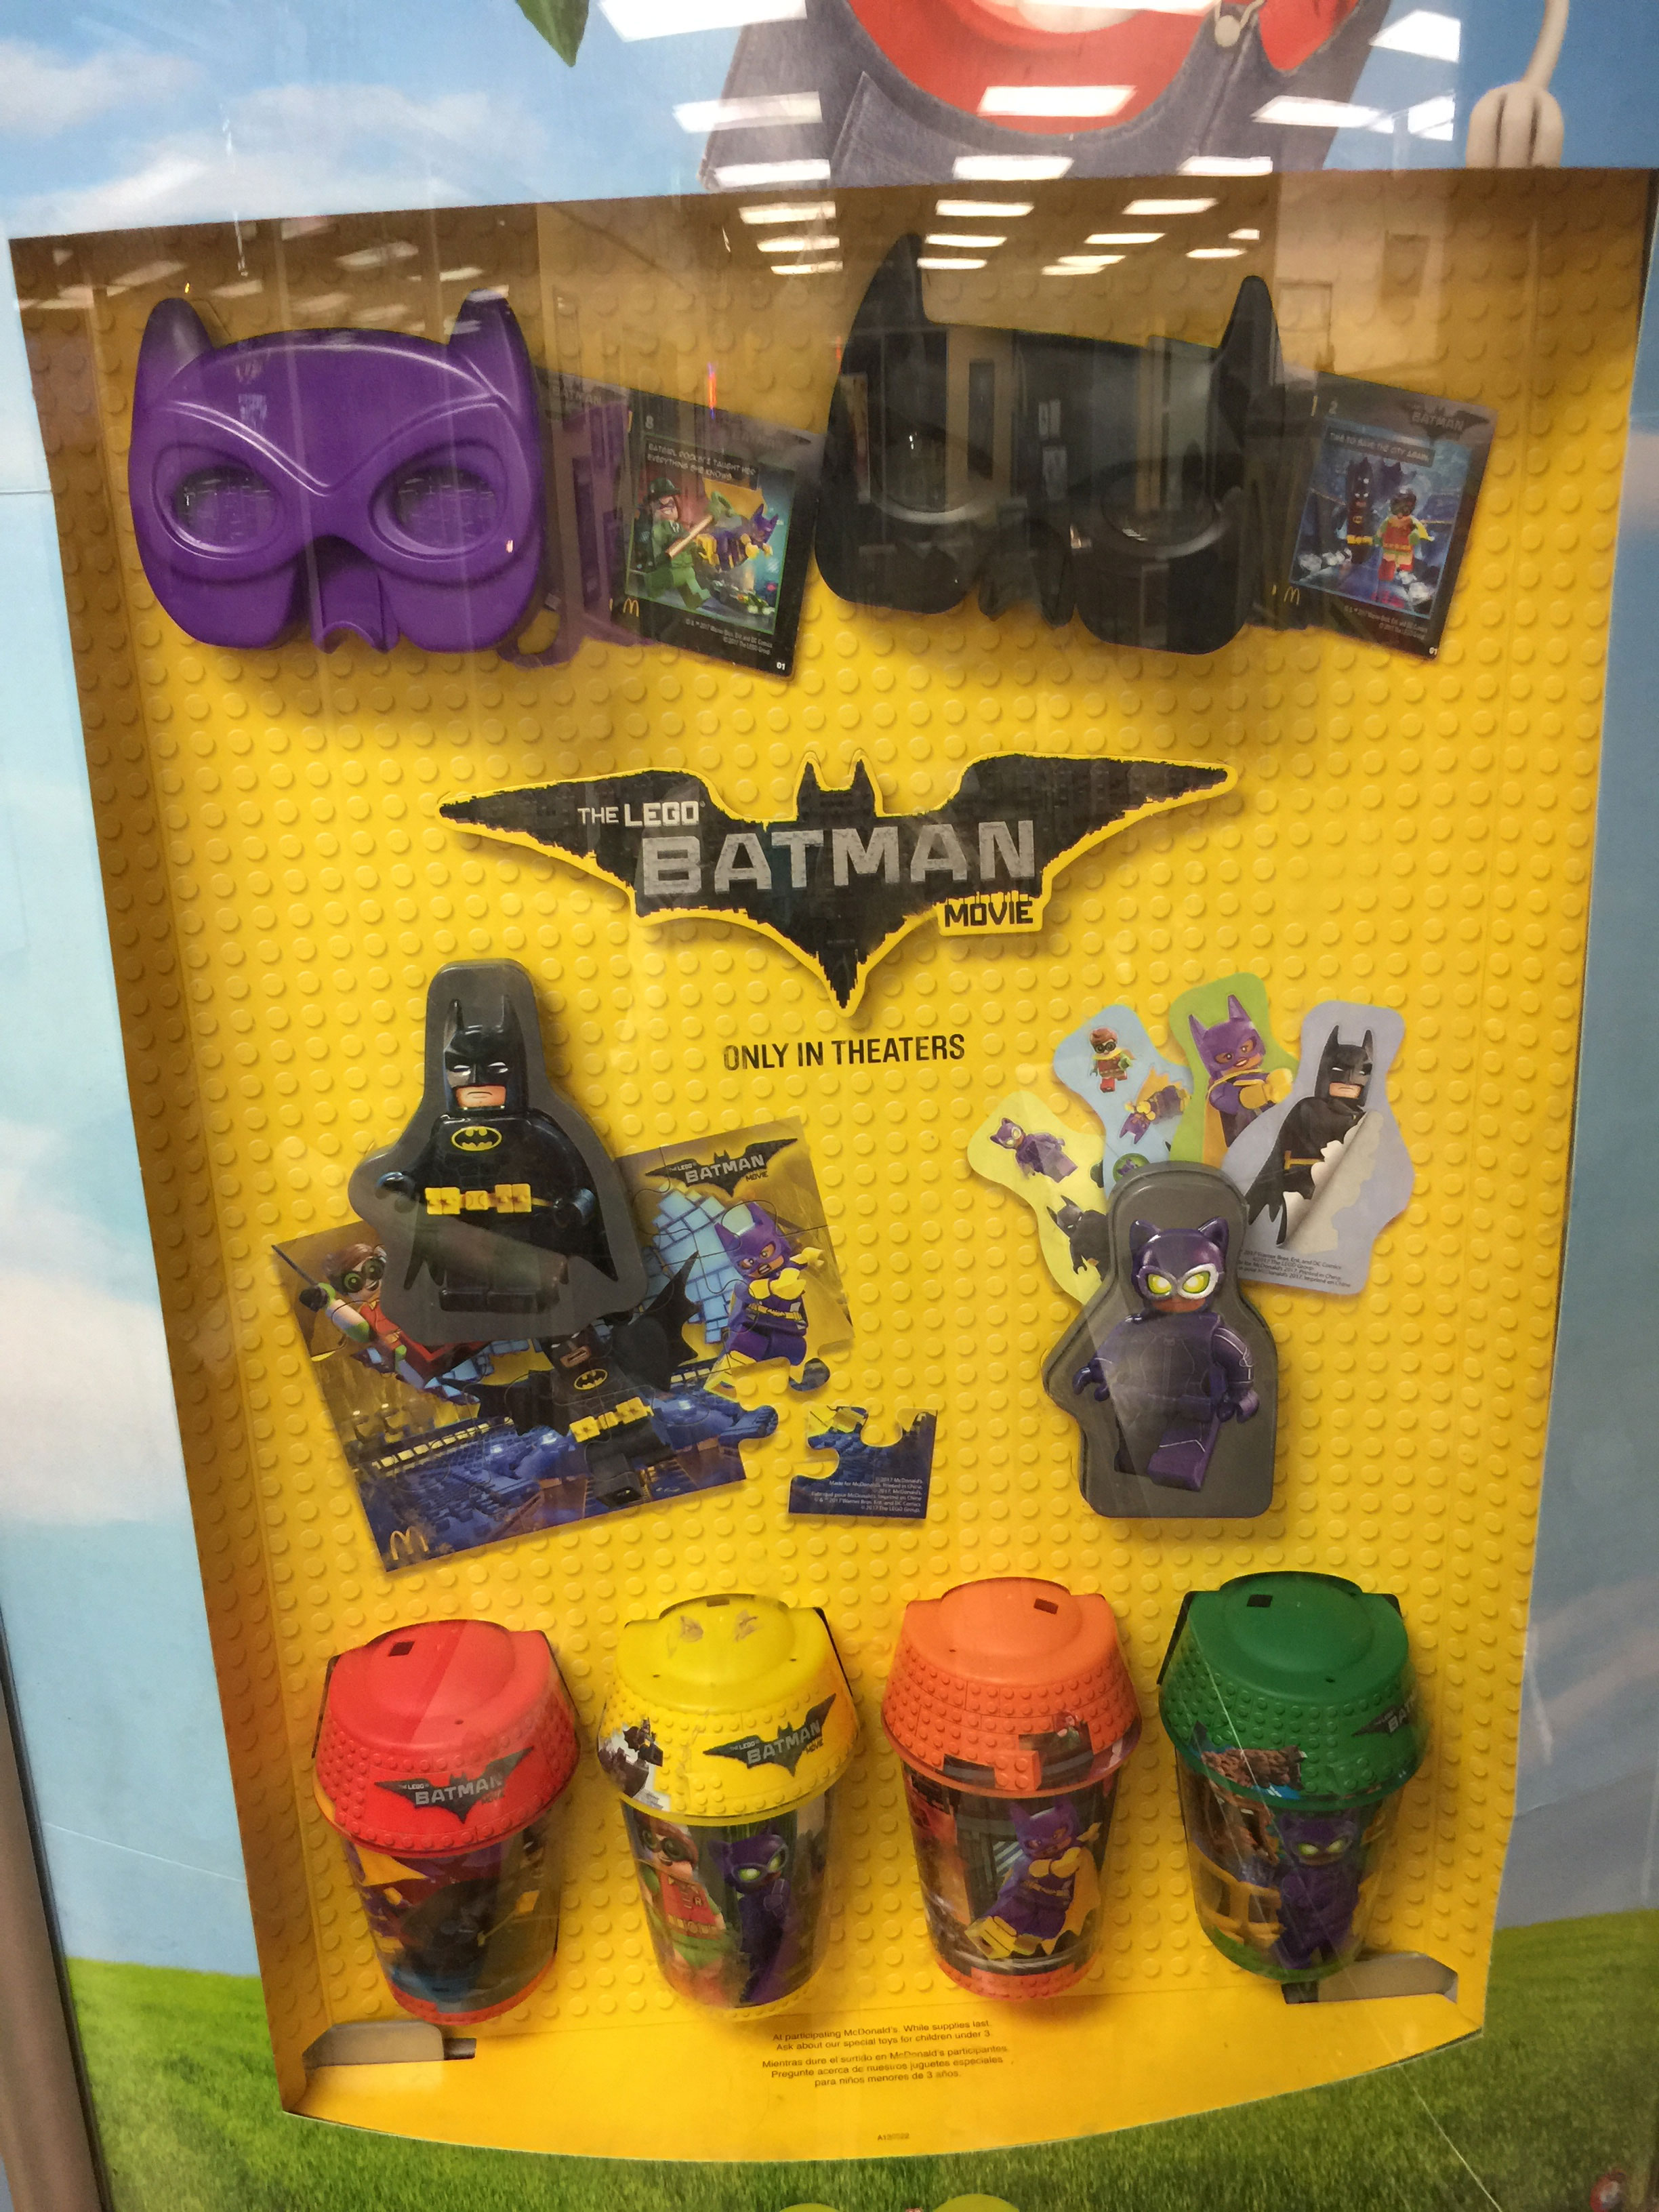 Obsesión pueblo horario The LEGO Batman Movie McDonald's Happy Meal Toy Tie-in - FBTB